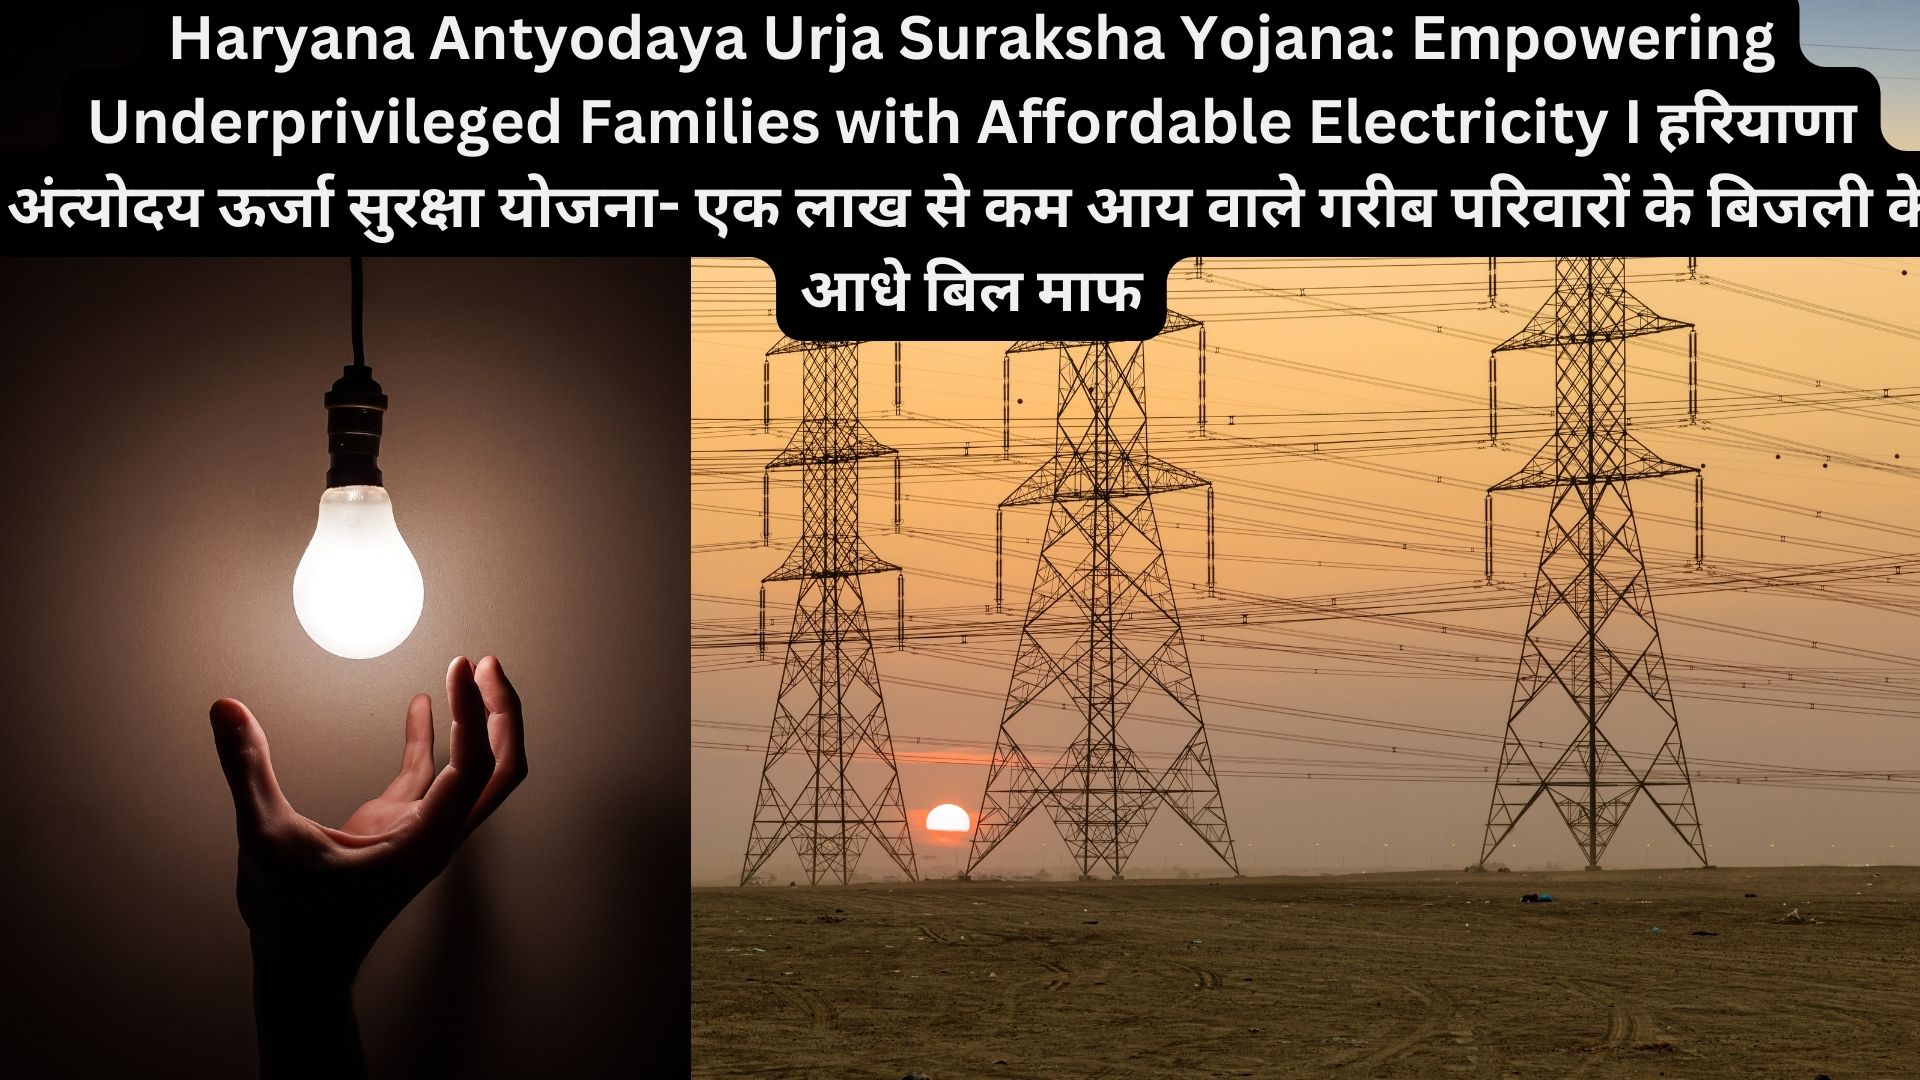 Haryana Antyodaya Urja Suraksha Yojana: Empowering Underprivileged Families with Affordable Electricity I हरियाणा अंत्योदय ऊर्जा सुरक्षा योजना- एक लाख से कम आय वाले गरीब परिवारों के बिजली के आधे बिल माफ